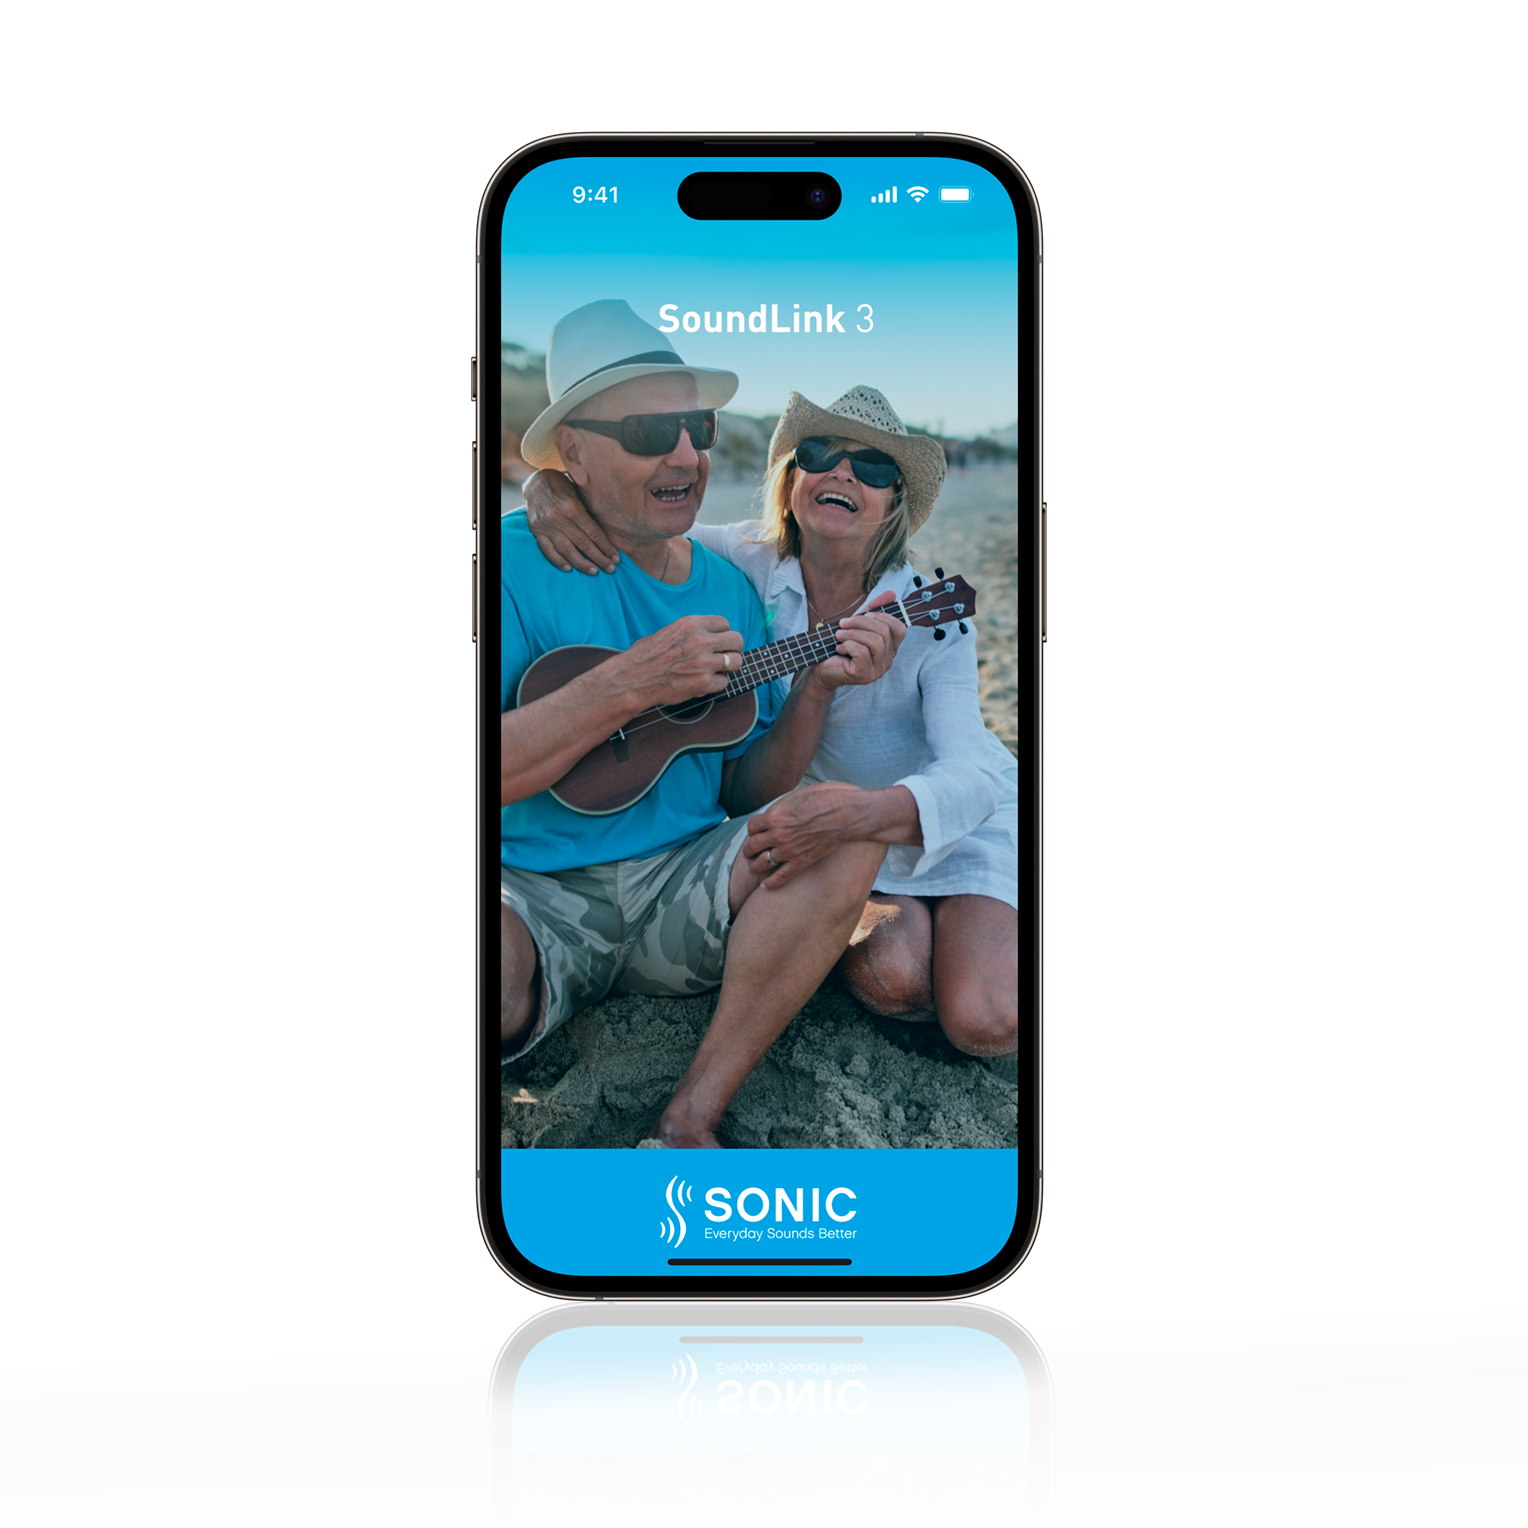 soundlink3-app-screen-radiant-pro